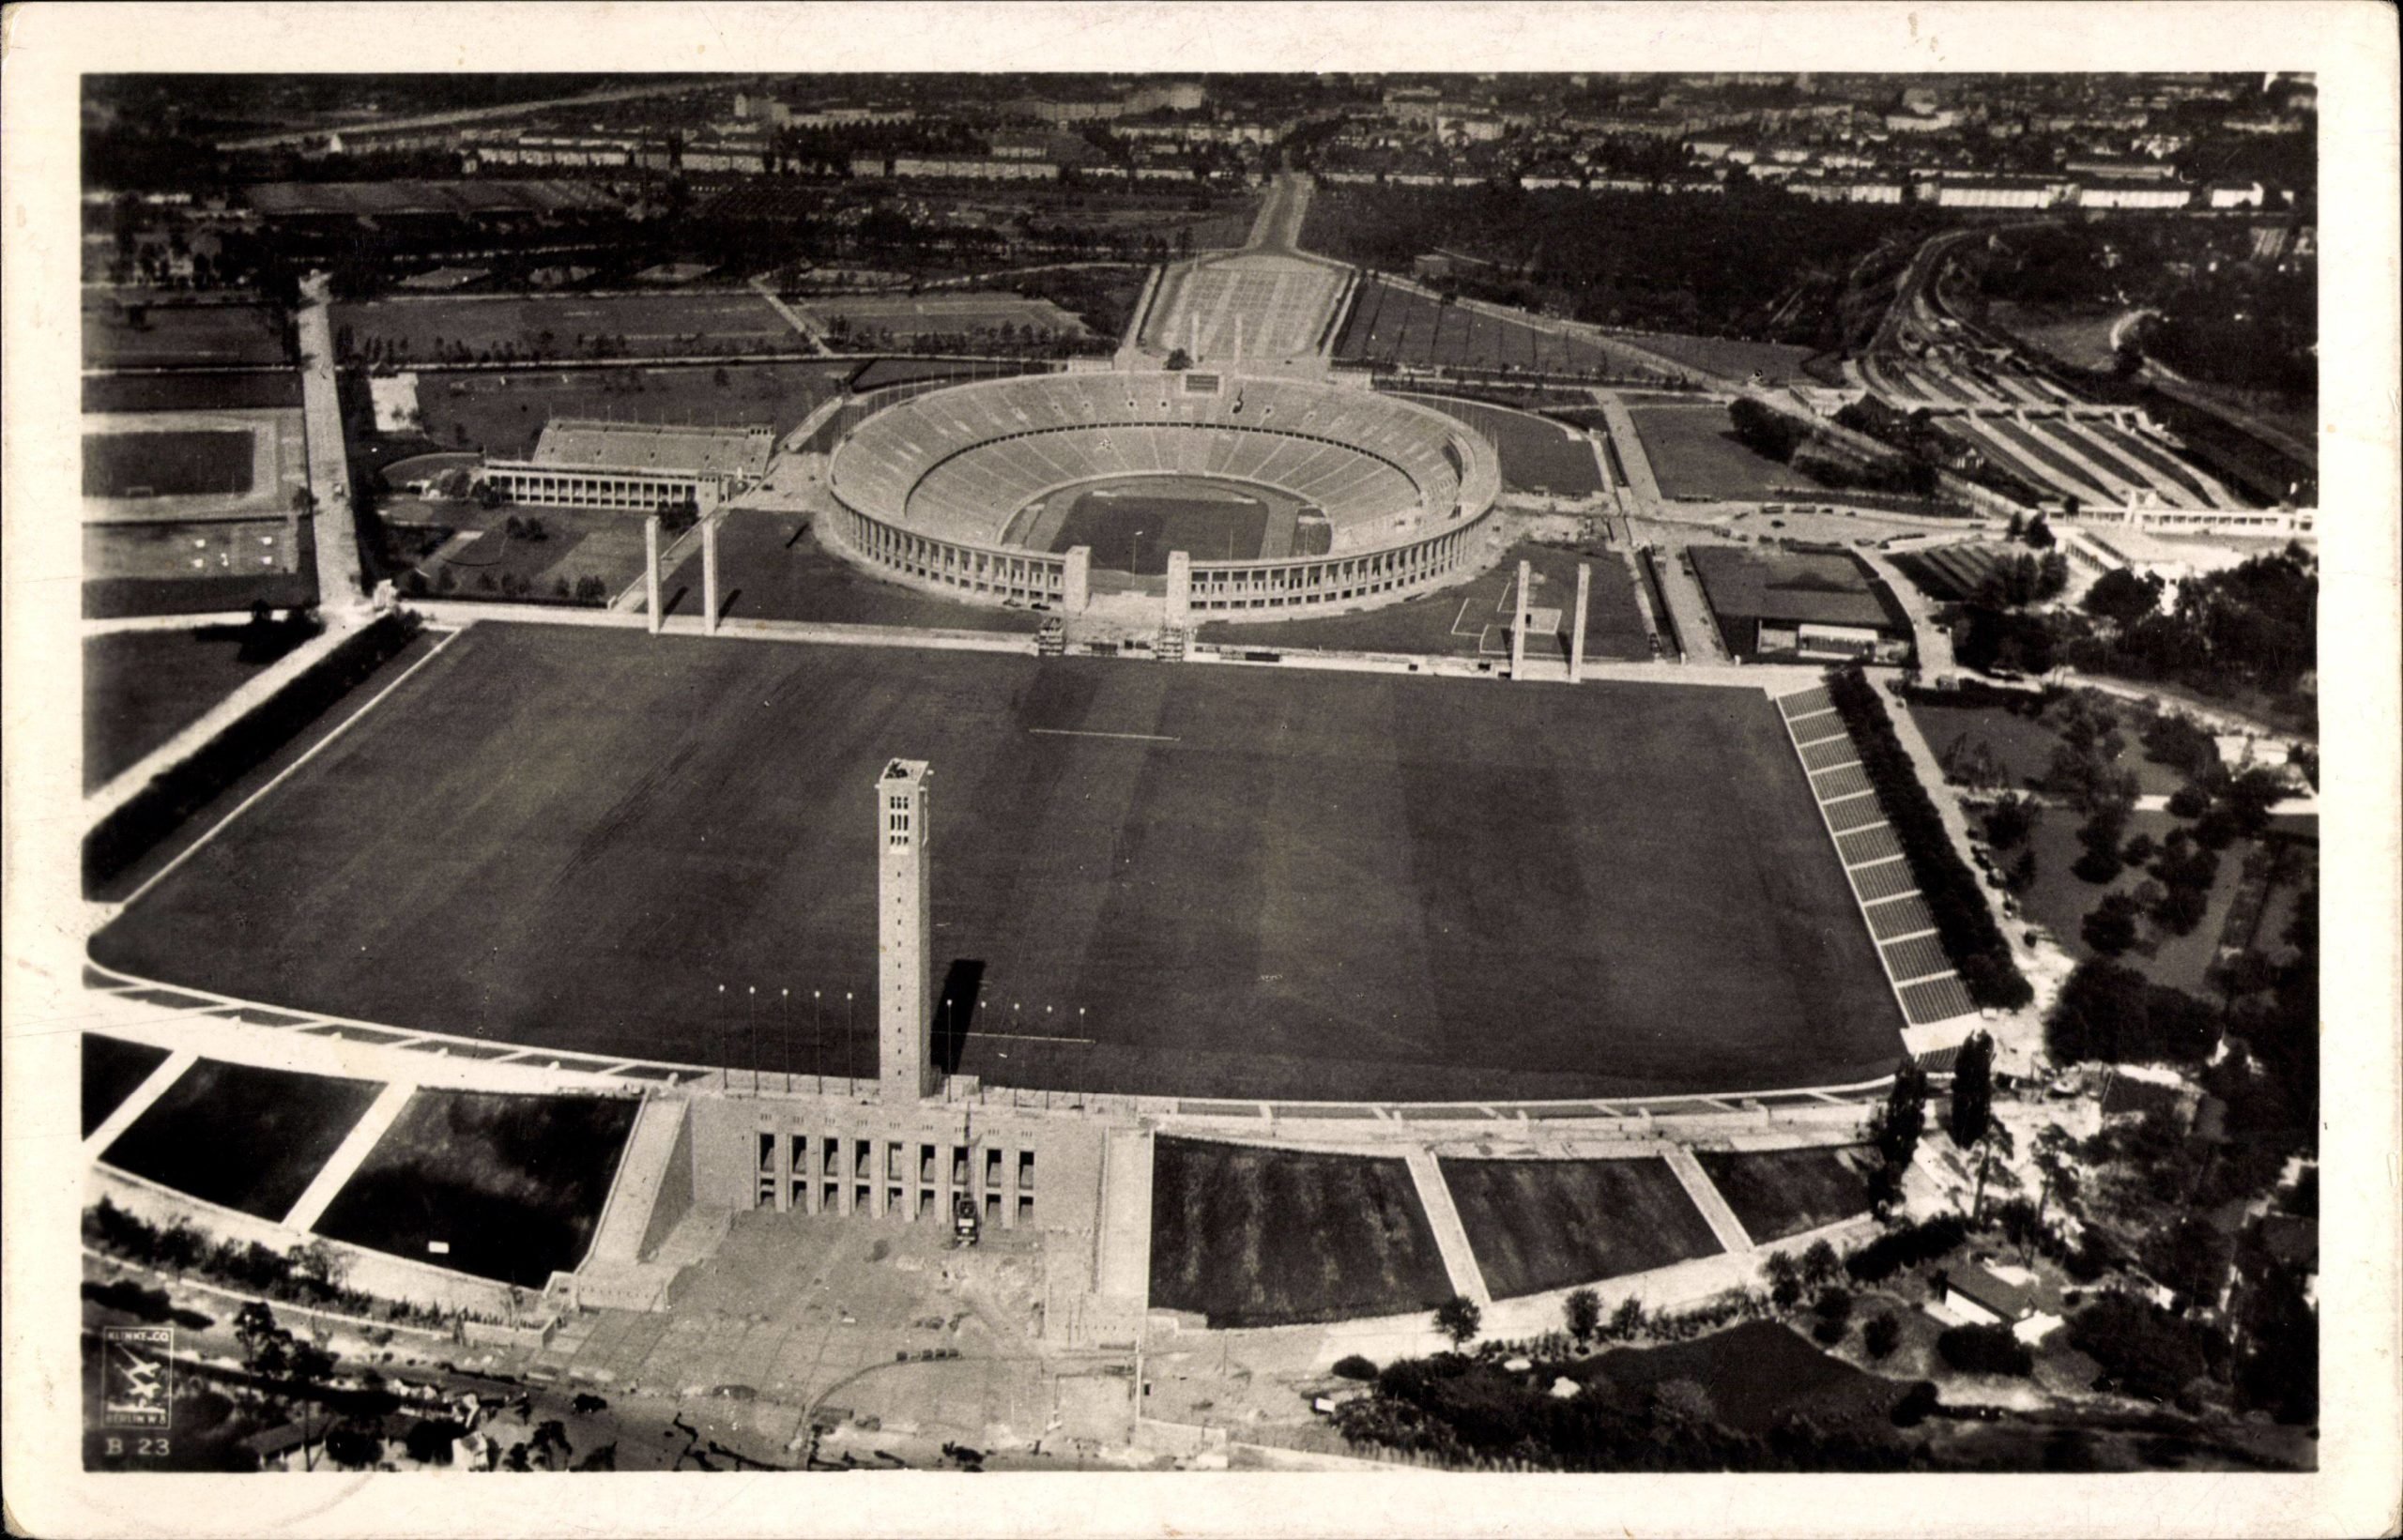 Das heutige Olympiagelände, damals "Reichssportfeld", in einer Luftaufnahme aus den 1930er-Jahren. Foto: Imago/Arkivi